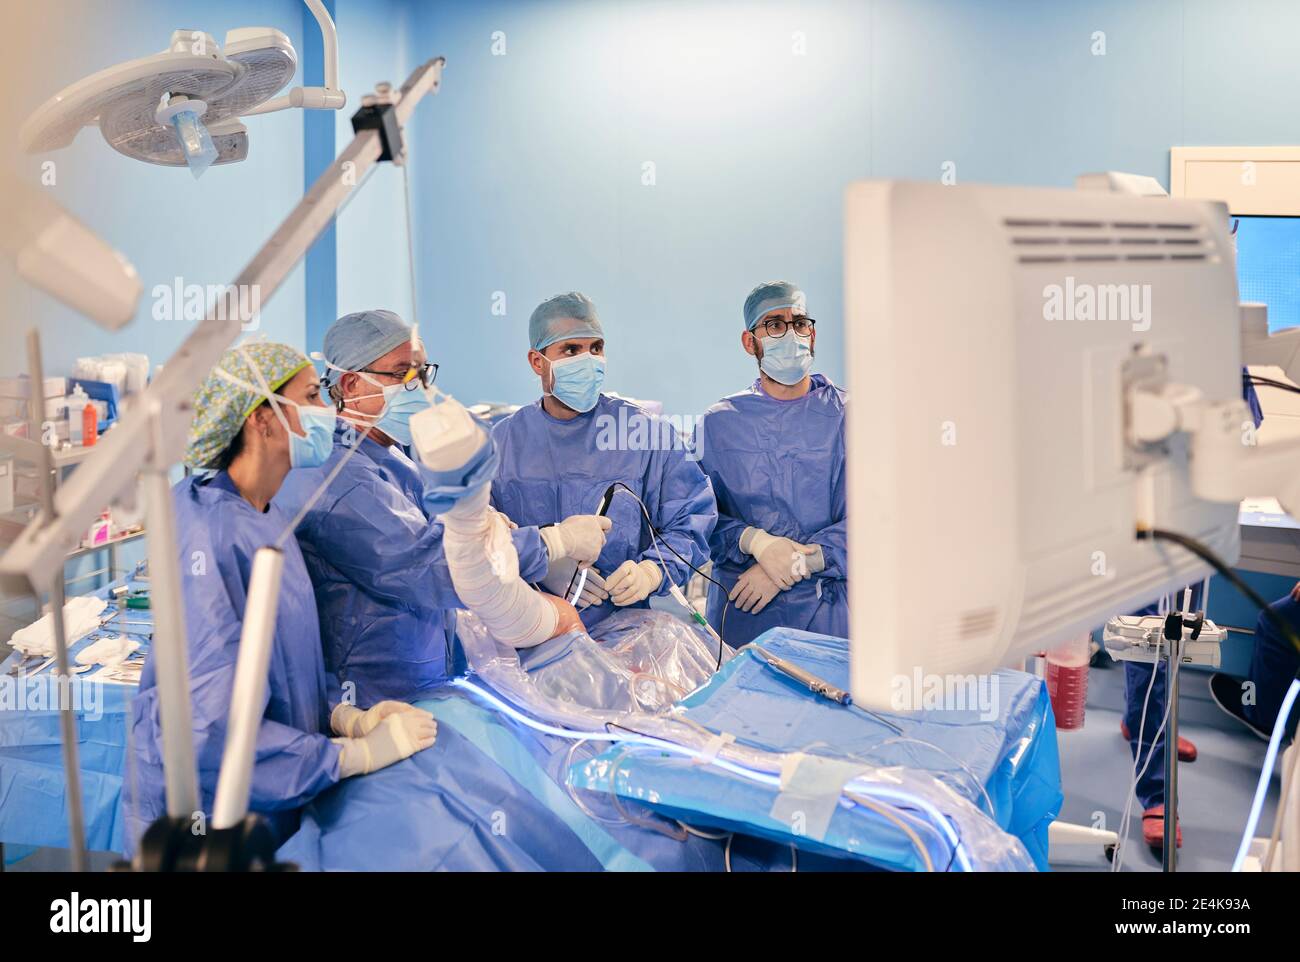 Chirurghi in maschera facciale e scrub medici che operano chirurgia artroscopica In piedi nella sala operatoria durante il COVID-19 Foto Stock